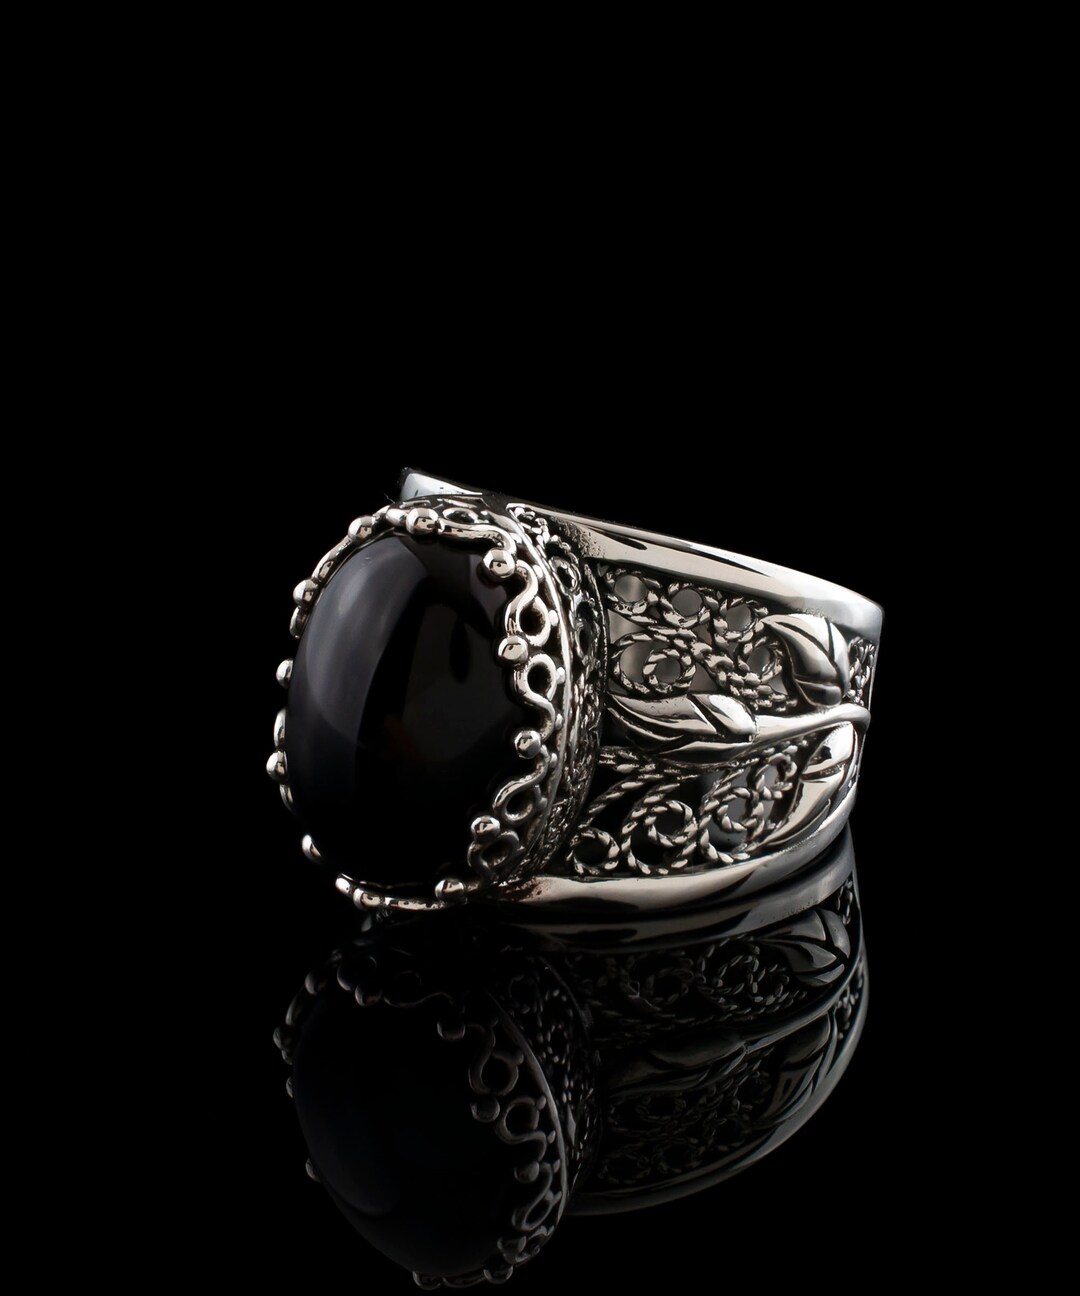 Black Onyx Silver Gothic Statement Ring 925 Sterling Artisan - Etsy